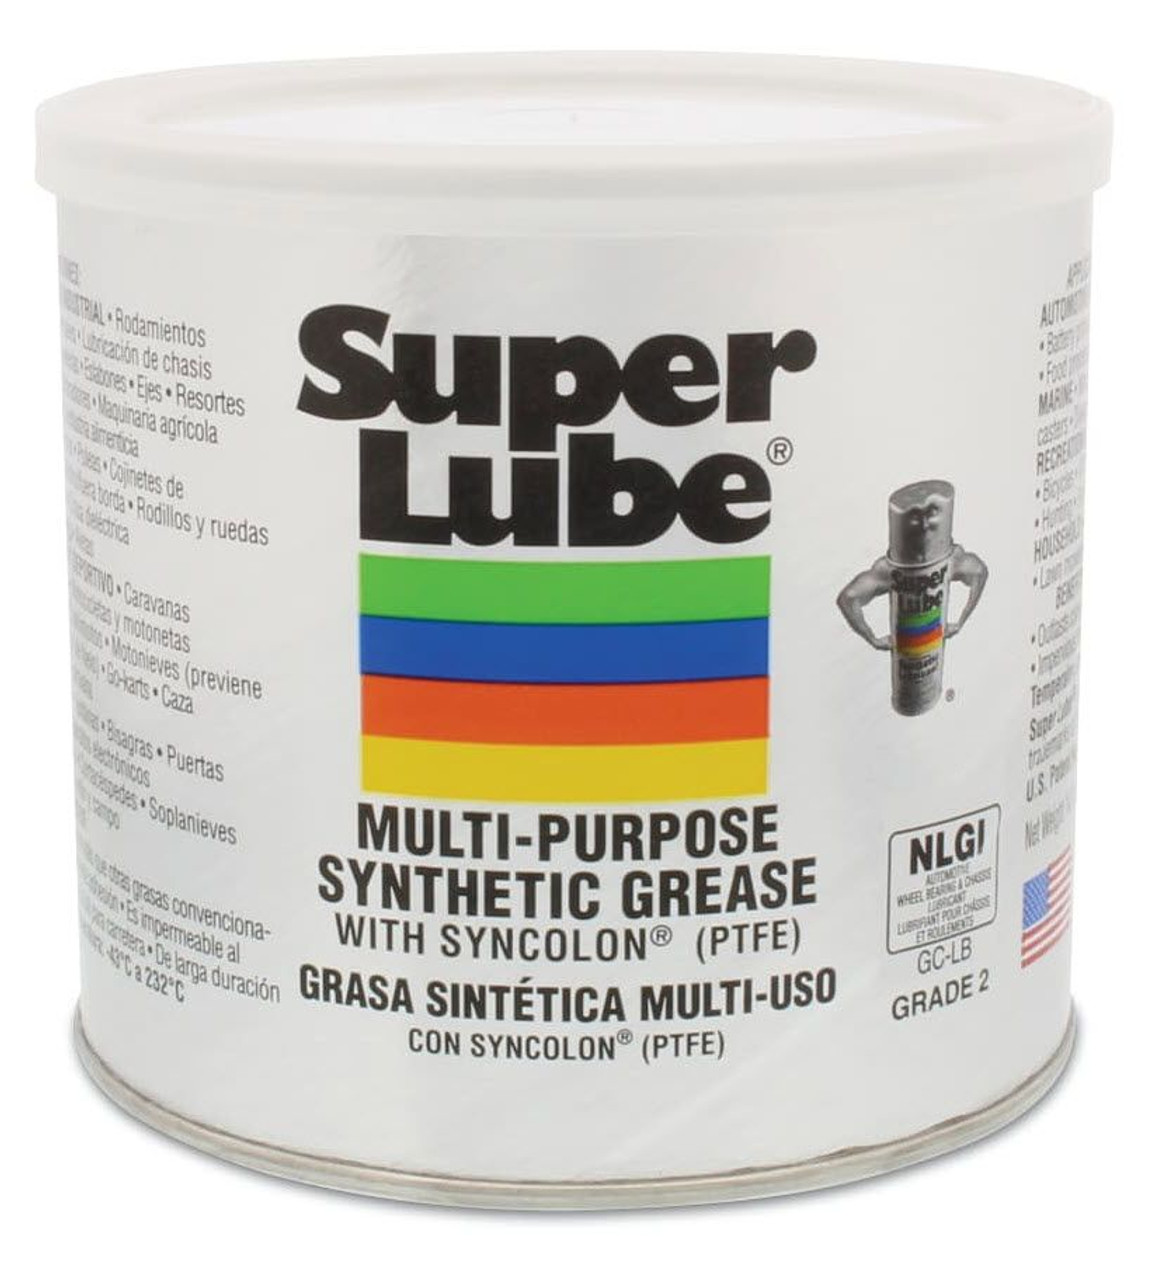 Super Lube with Teflon Multi-Purpose 14 Oz. Spray Can - Sportsmith